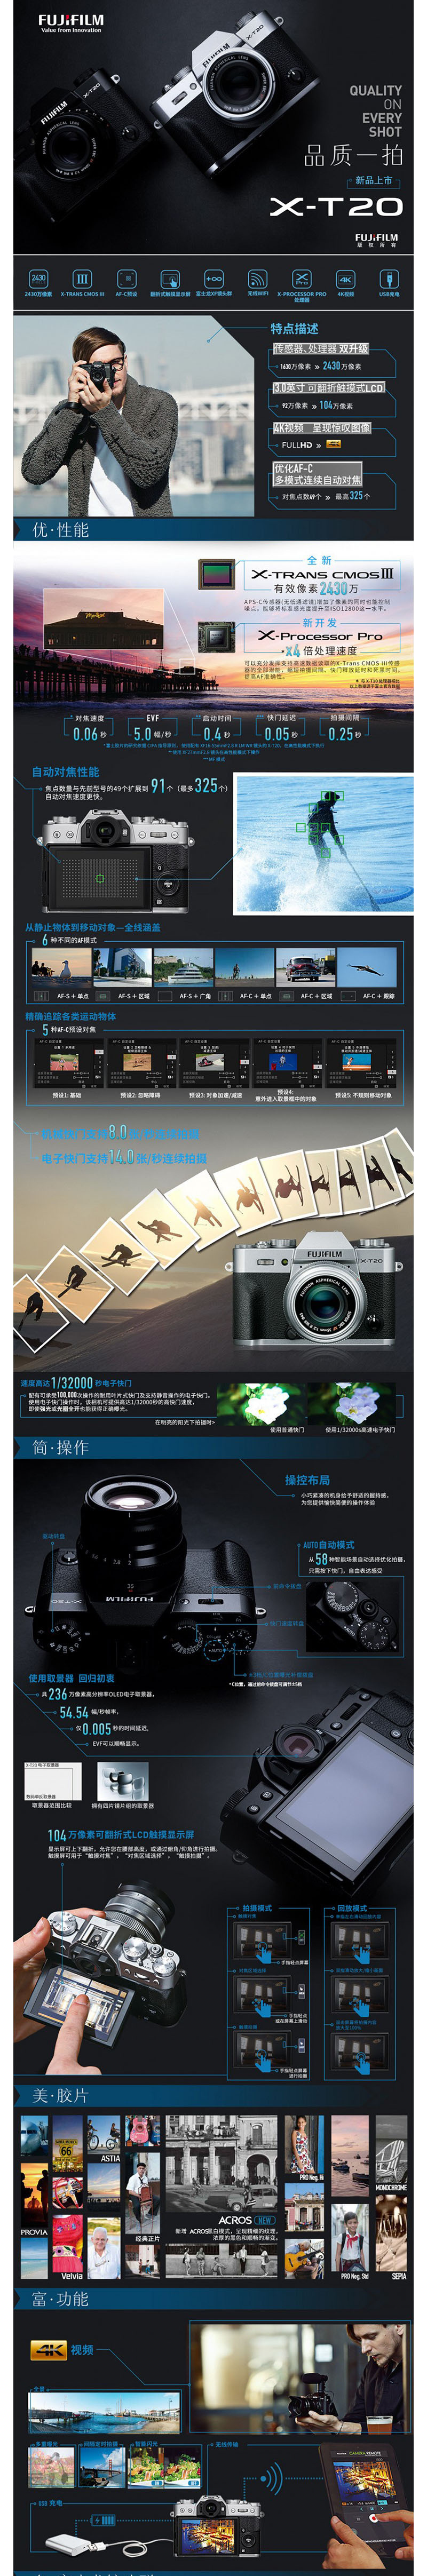 富士 X-T20 XF18-55 微单/照相机2430万像素 XT20 翻折触摸屏 4K